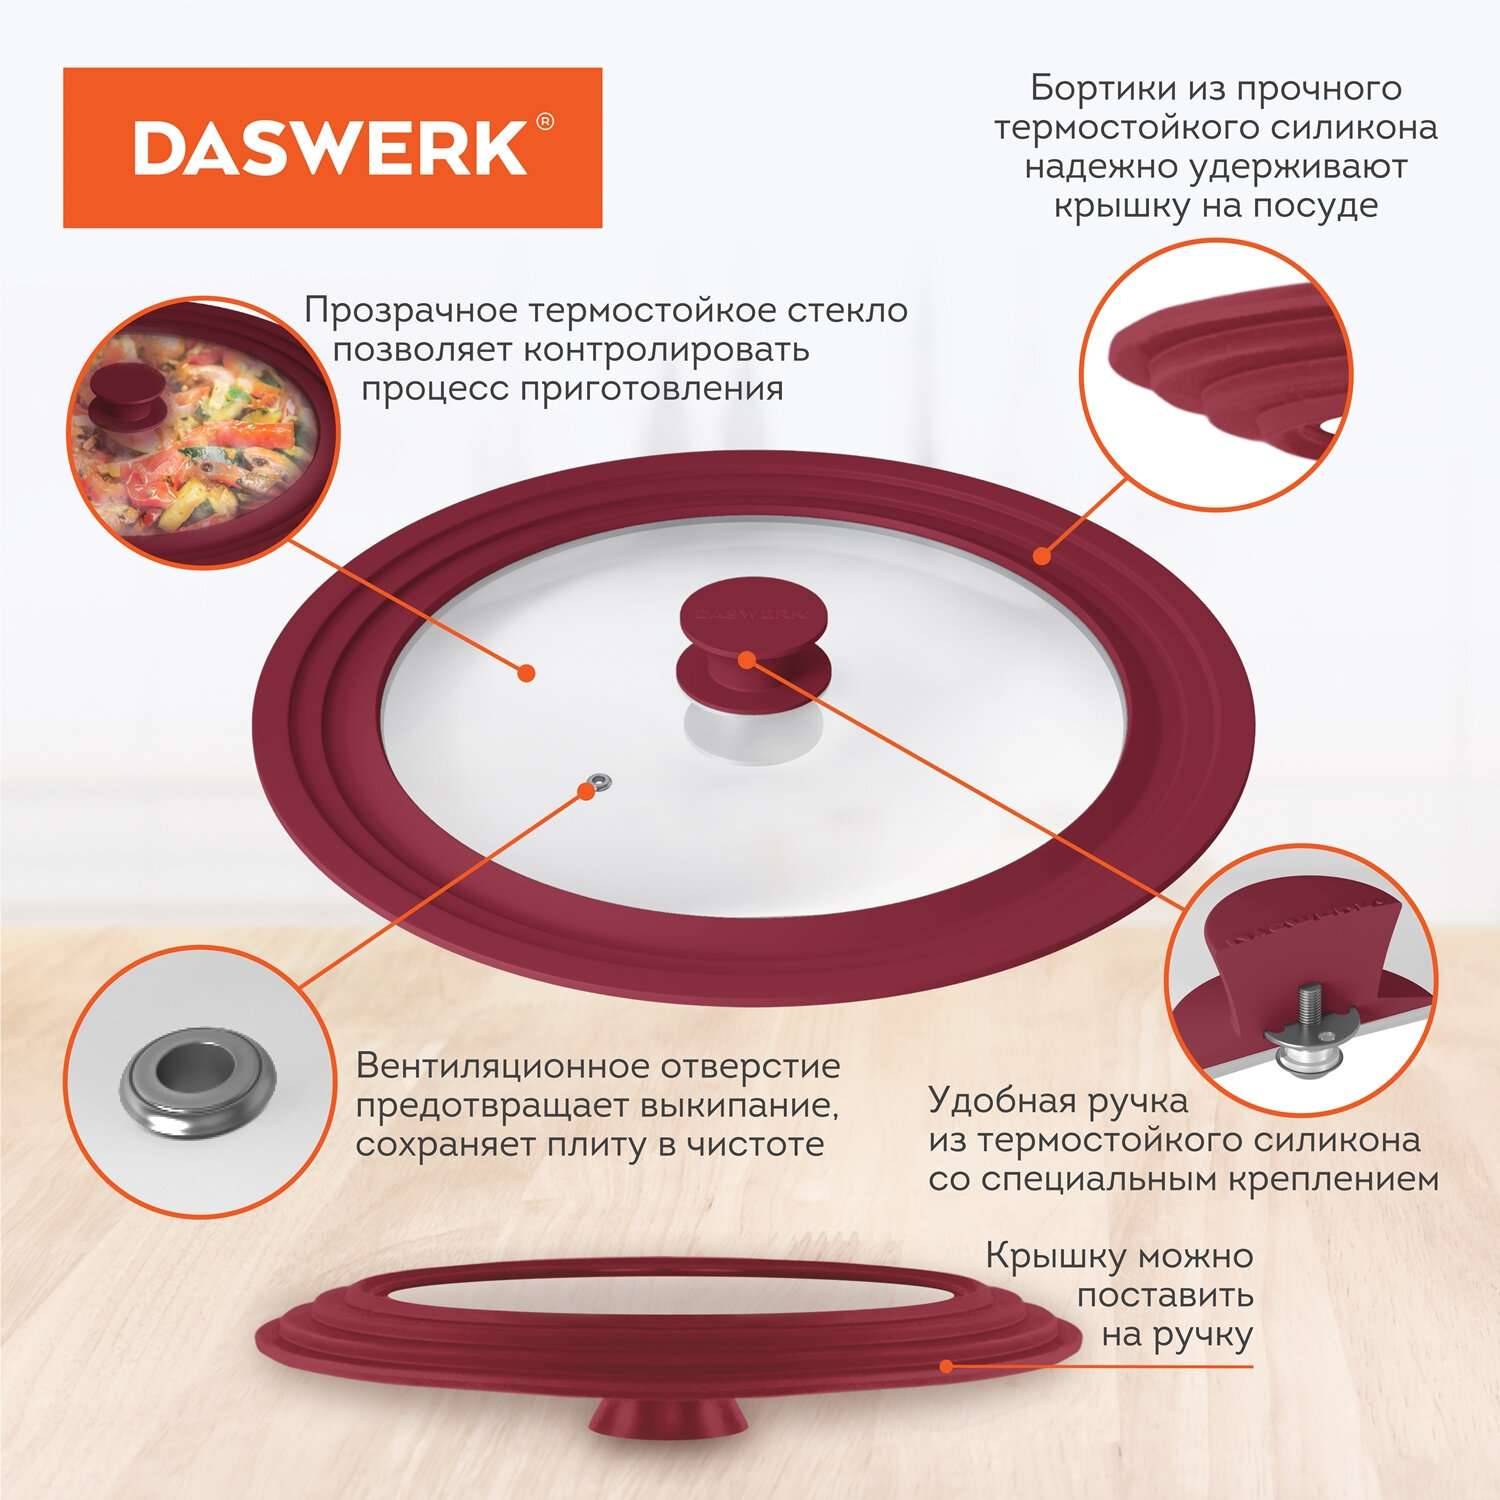 Крышка для сковороды DASWERK кастрюли посуды универсальная 3 размера 24-26-28см - фото 3